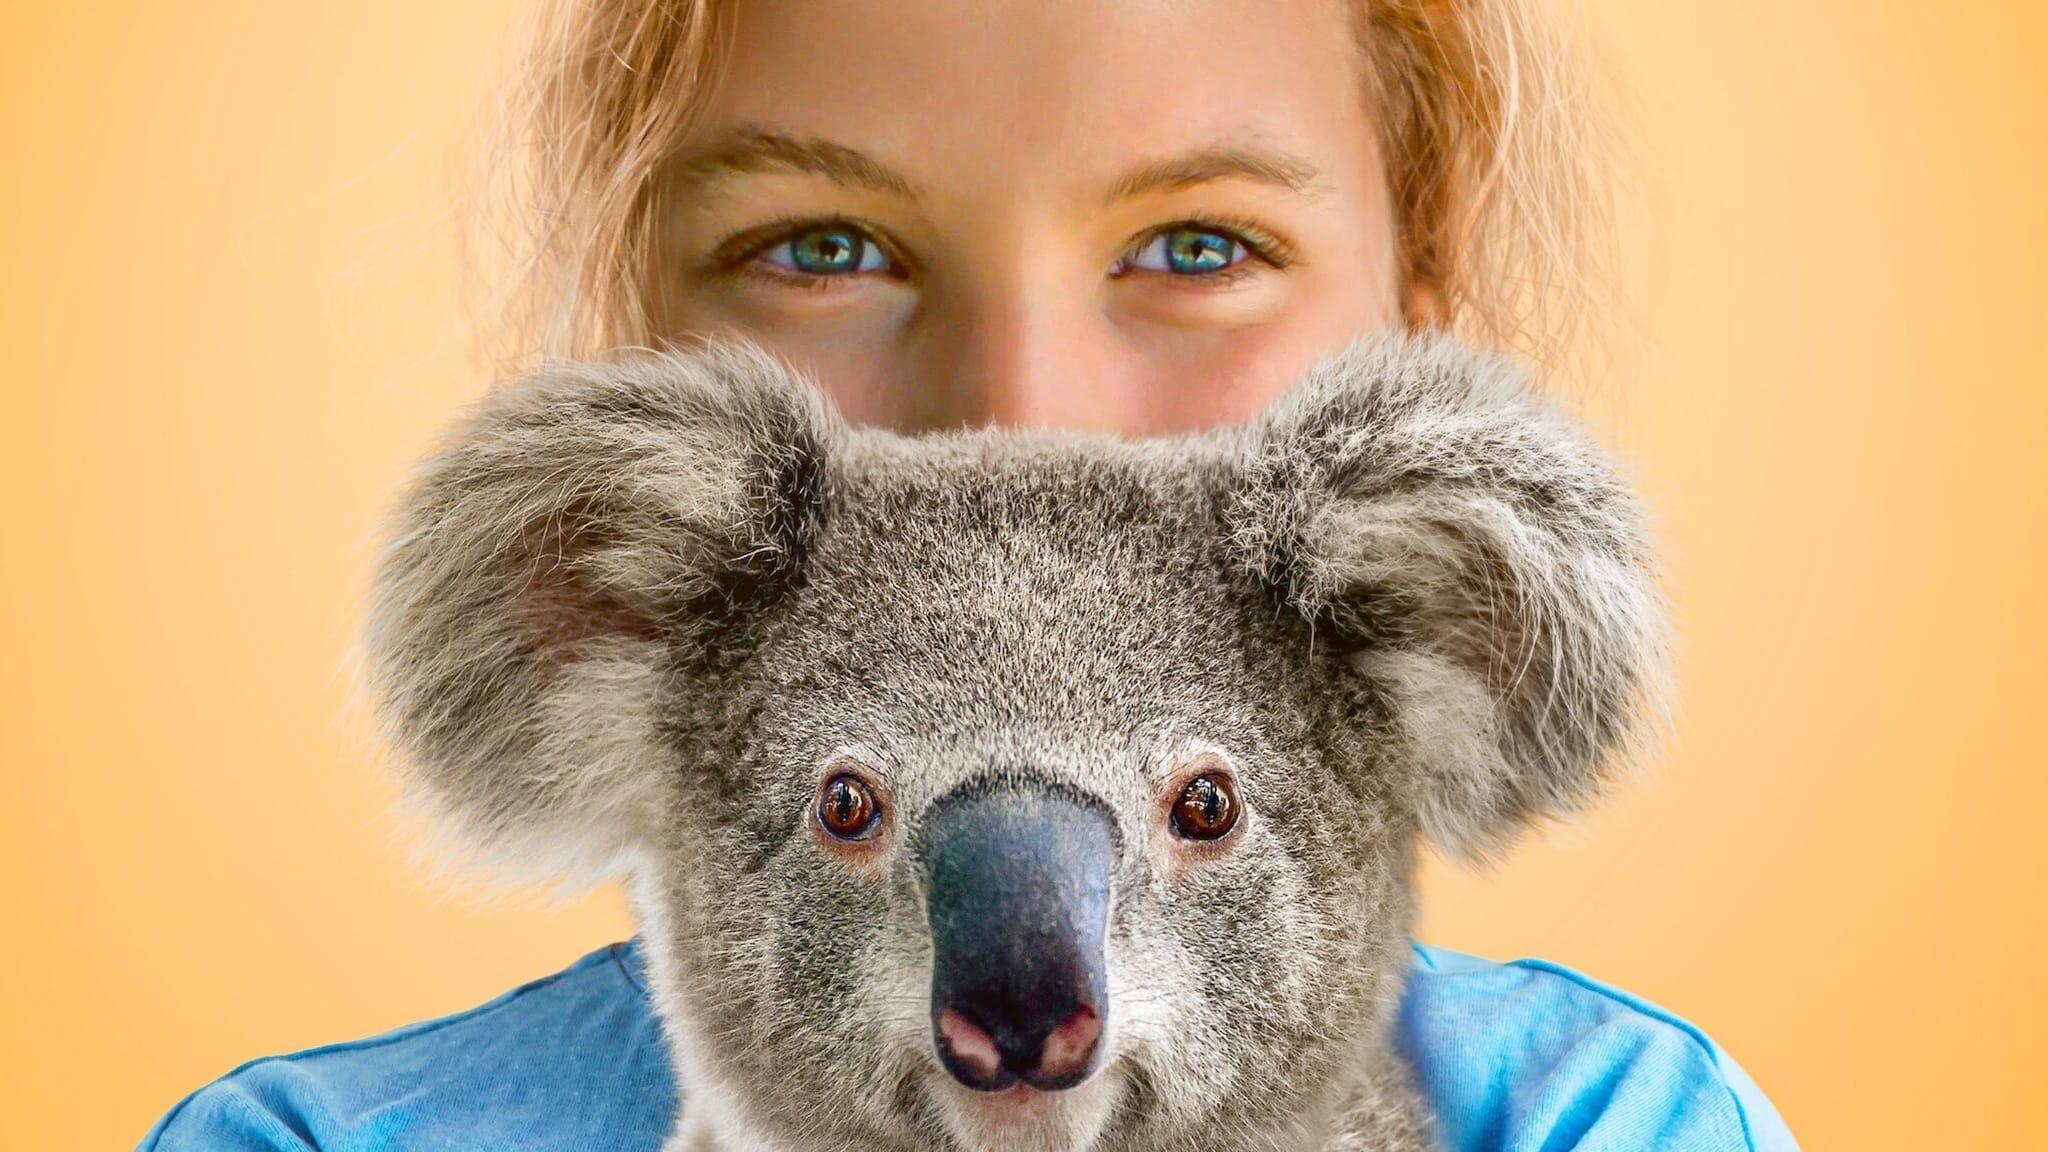 Izzy's Koala World backdrop